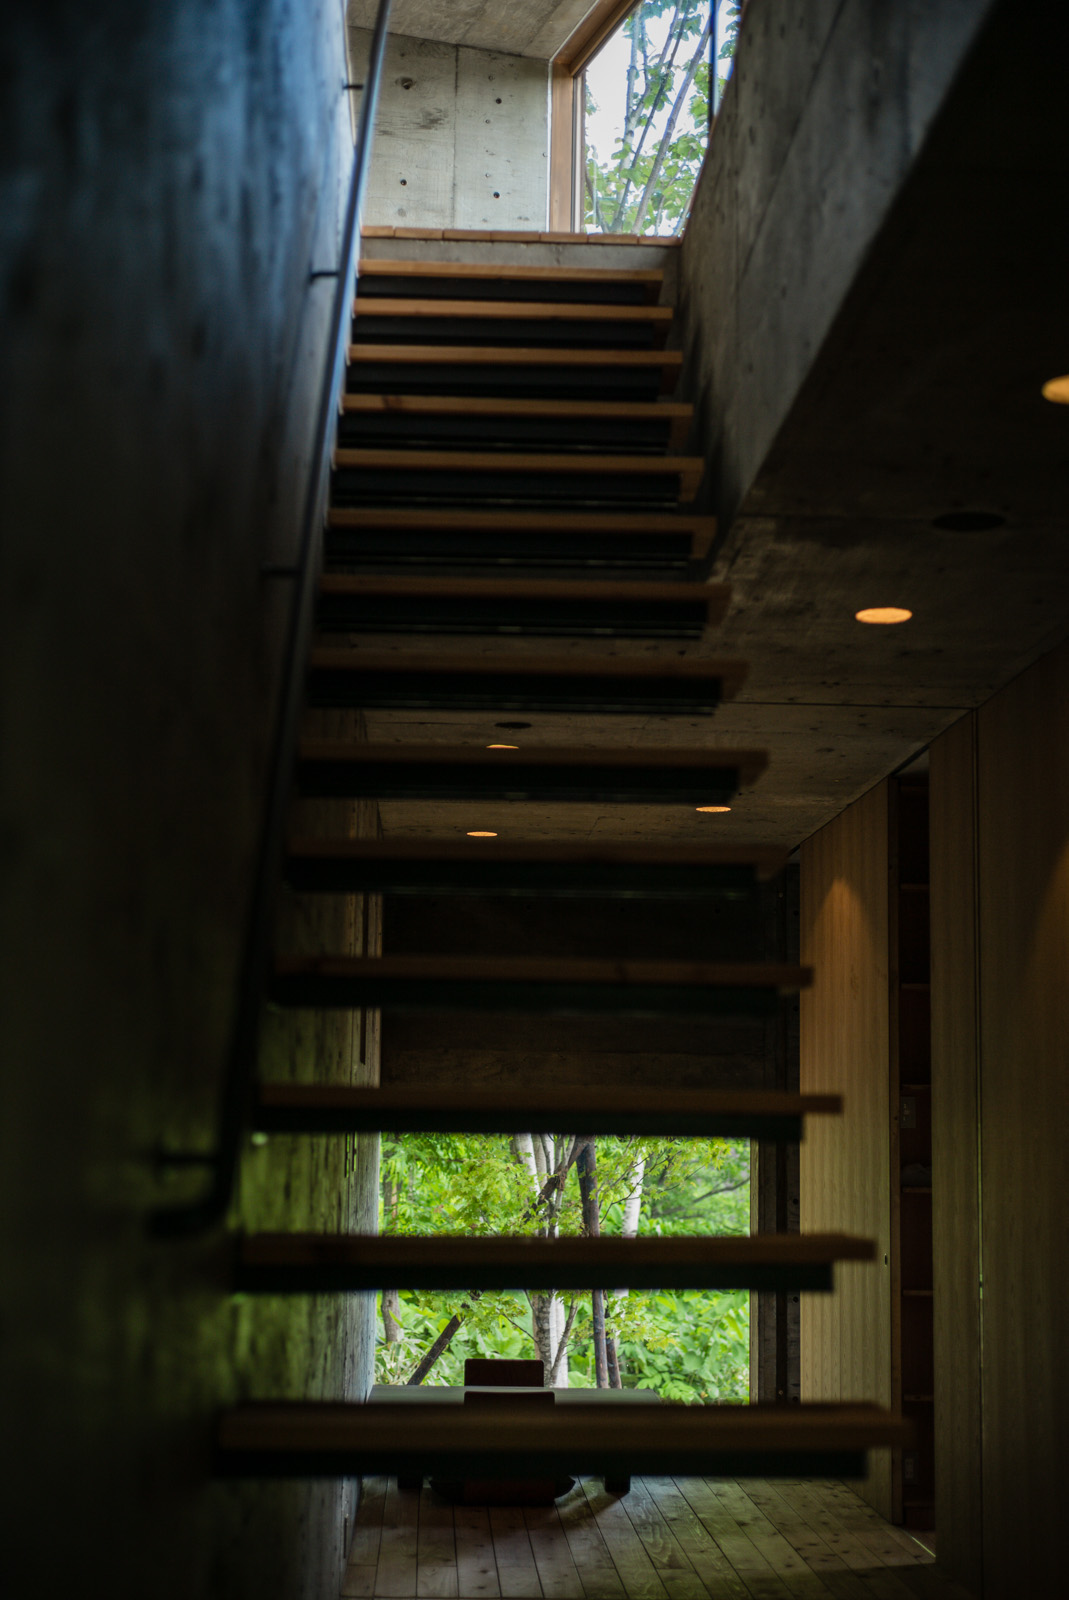 Denní zóna se nachází v poschodí, do něhož vede ocelové schodiště s dřevěnými nástupnicemi, které architekti upřednostnili před plným železobetonovým, čímž se prostor provzdušnil.